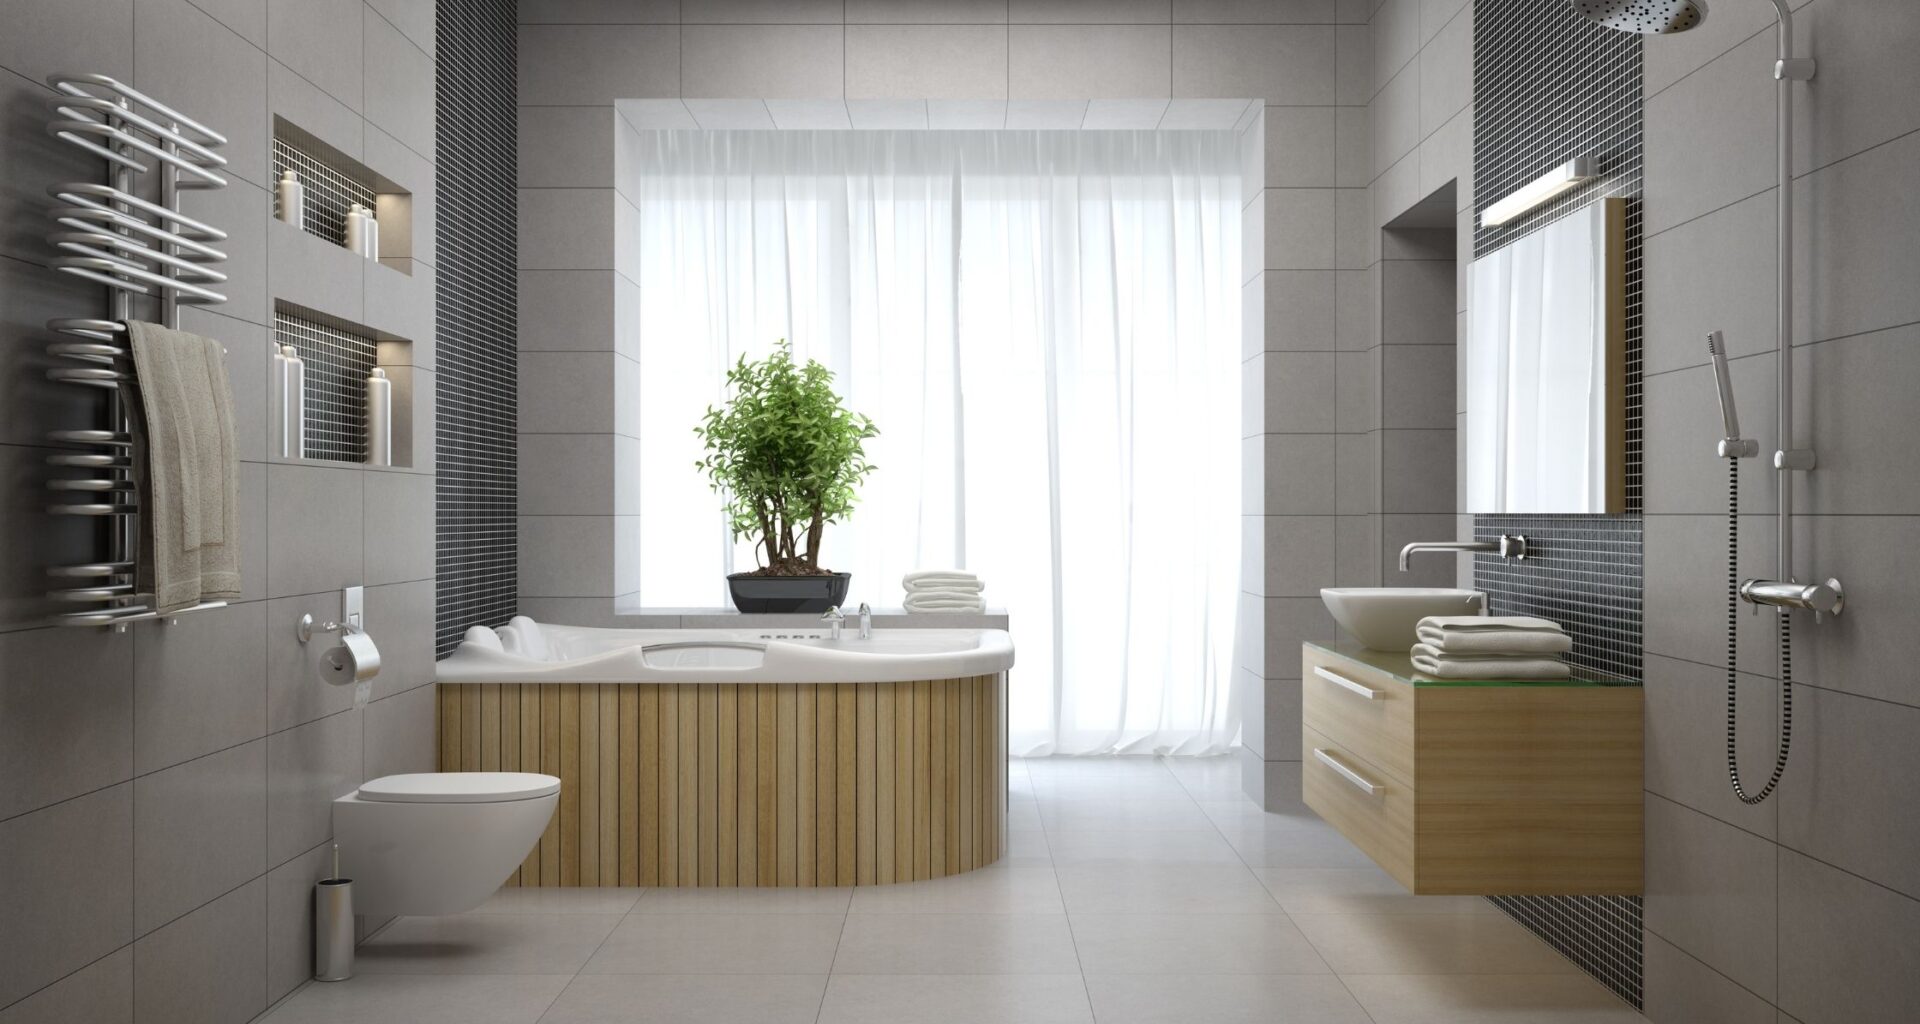 4 idee per organizzare lo spazio nei bagni piccoli moderni